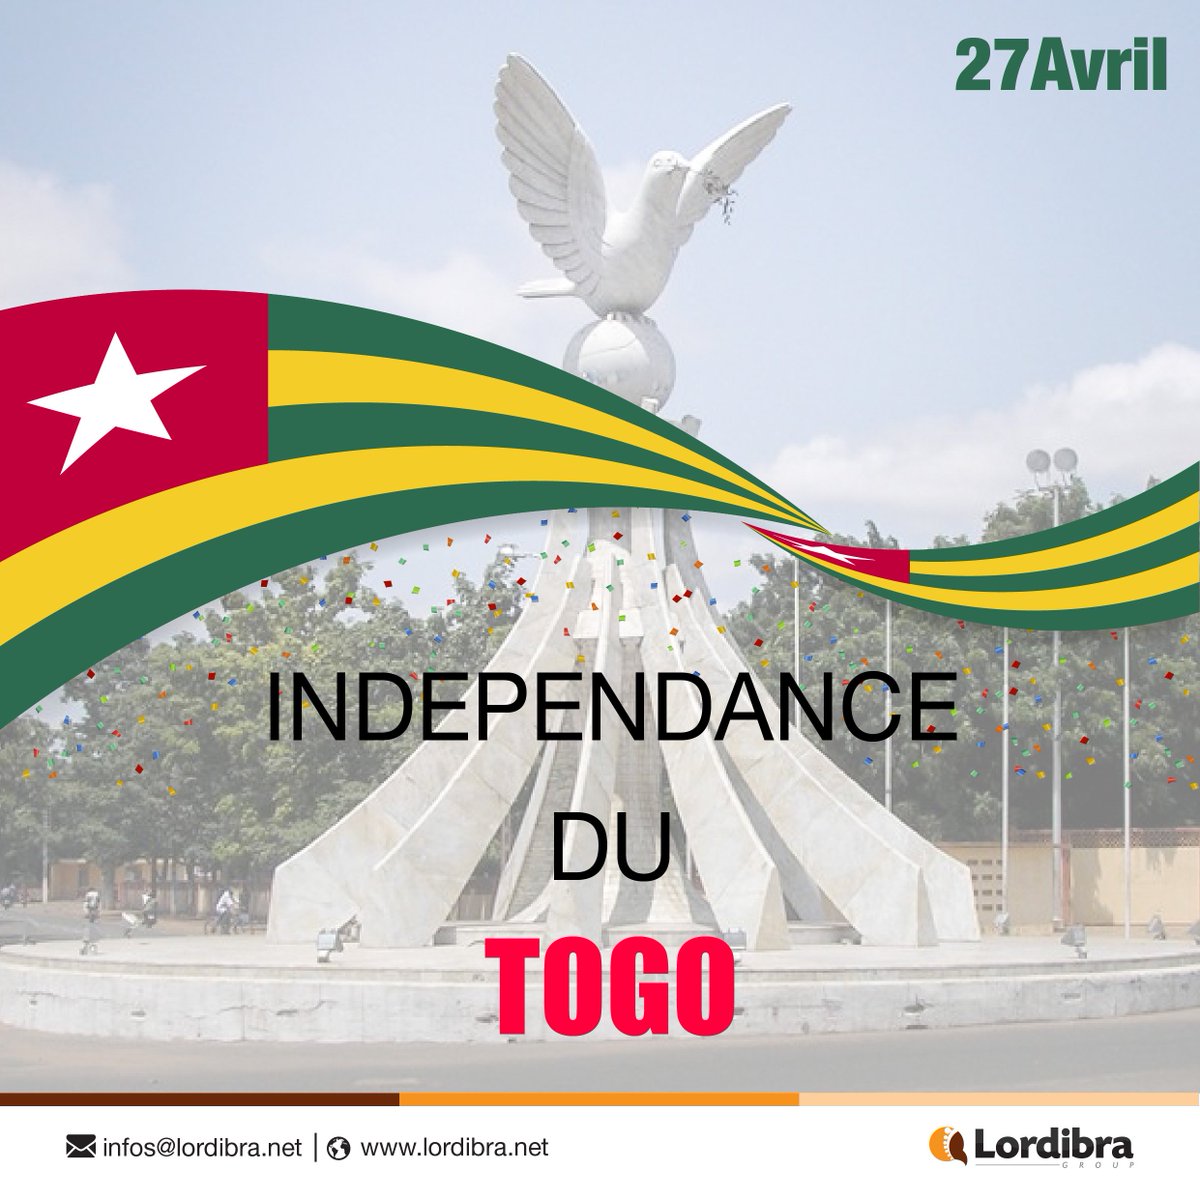 Célébrons ensemble le 59ème anniversaire de l'indépendance du Togo.
----------------------------------------------------------------------------------------------
#togo 
#togolais
#togolaise 
#togoindependence 
#togoindependenceday
#LordibraGroup